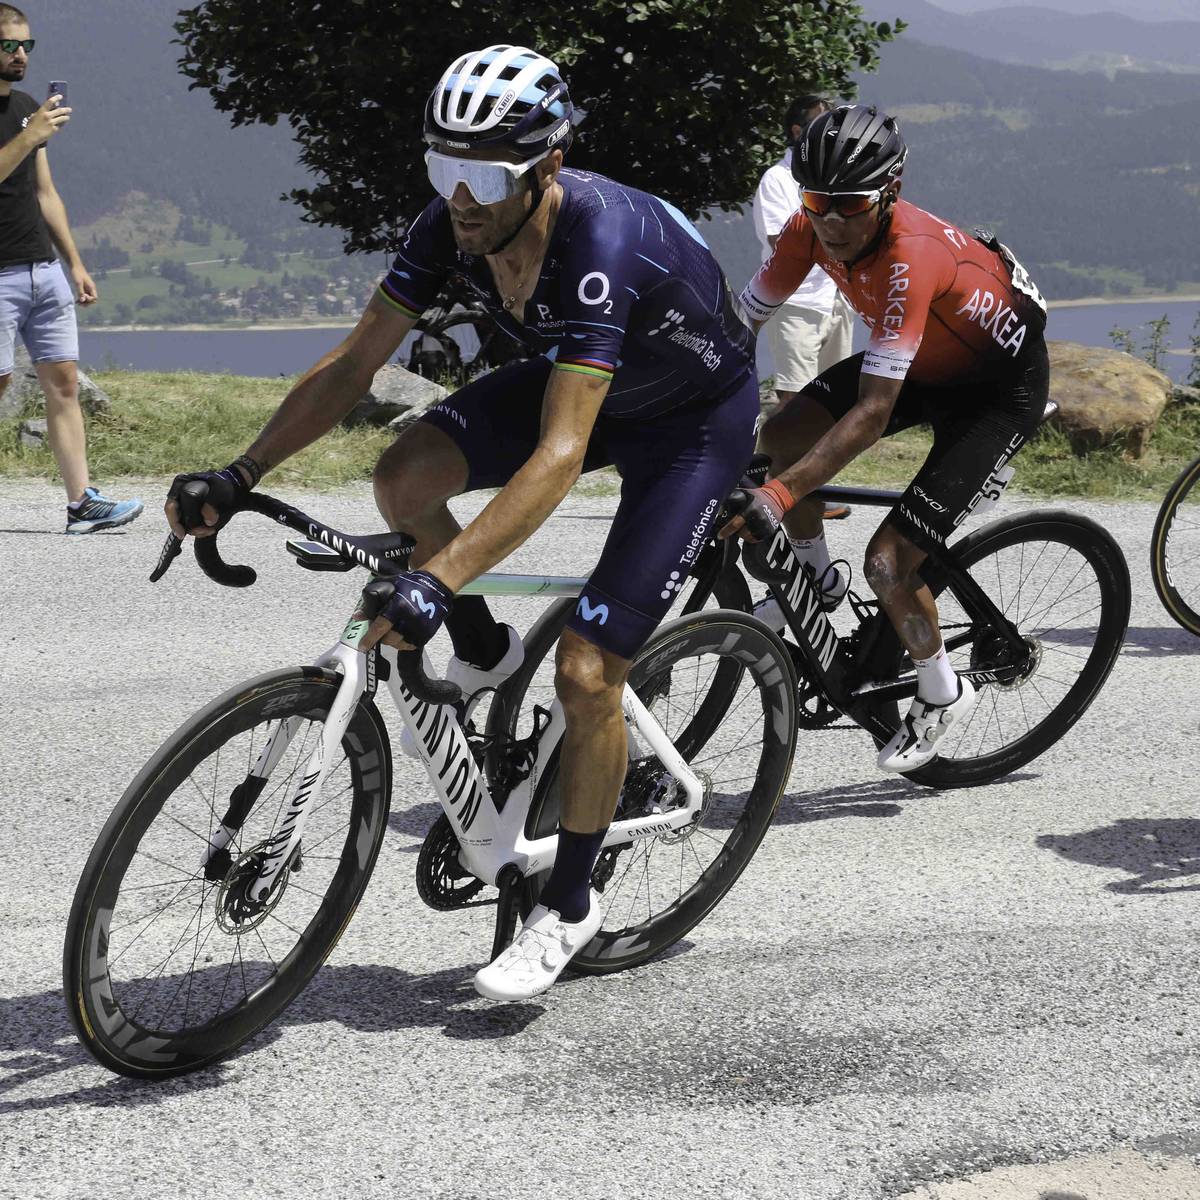 Der spanische Radstar Alejandro Valverde wird beim Training von einem Auto angefahren – kommt aber wohl glimpflich davon. Der Verursacher begeht offenbar Fahrerflucht.